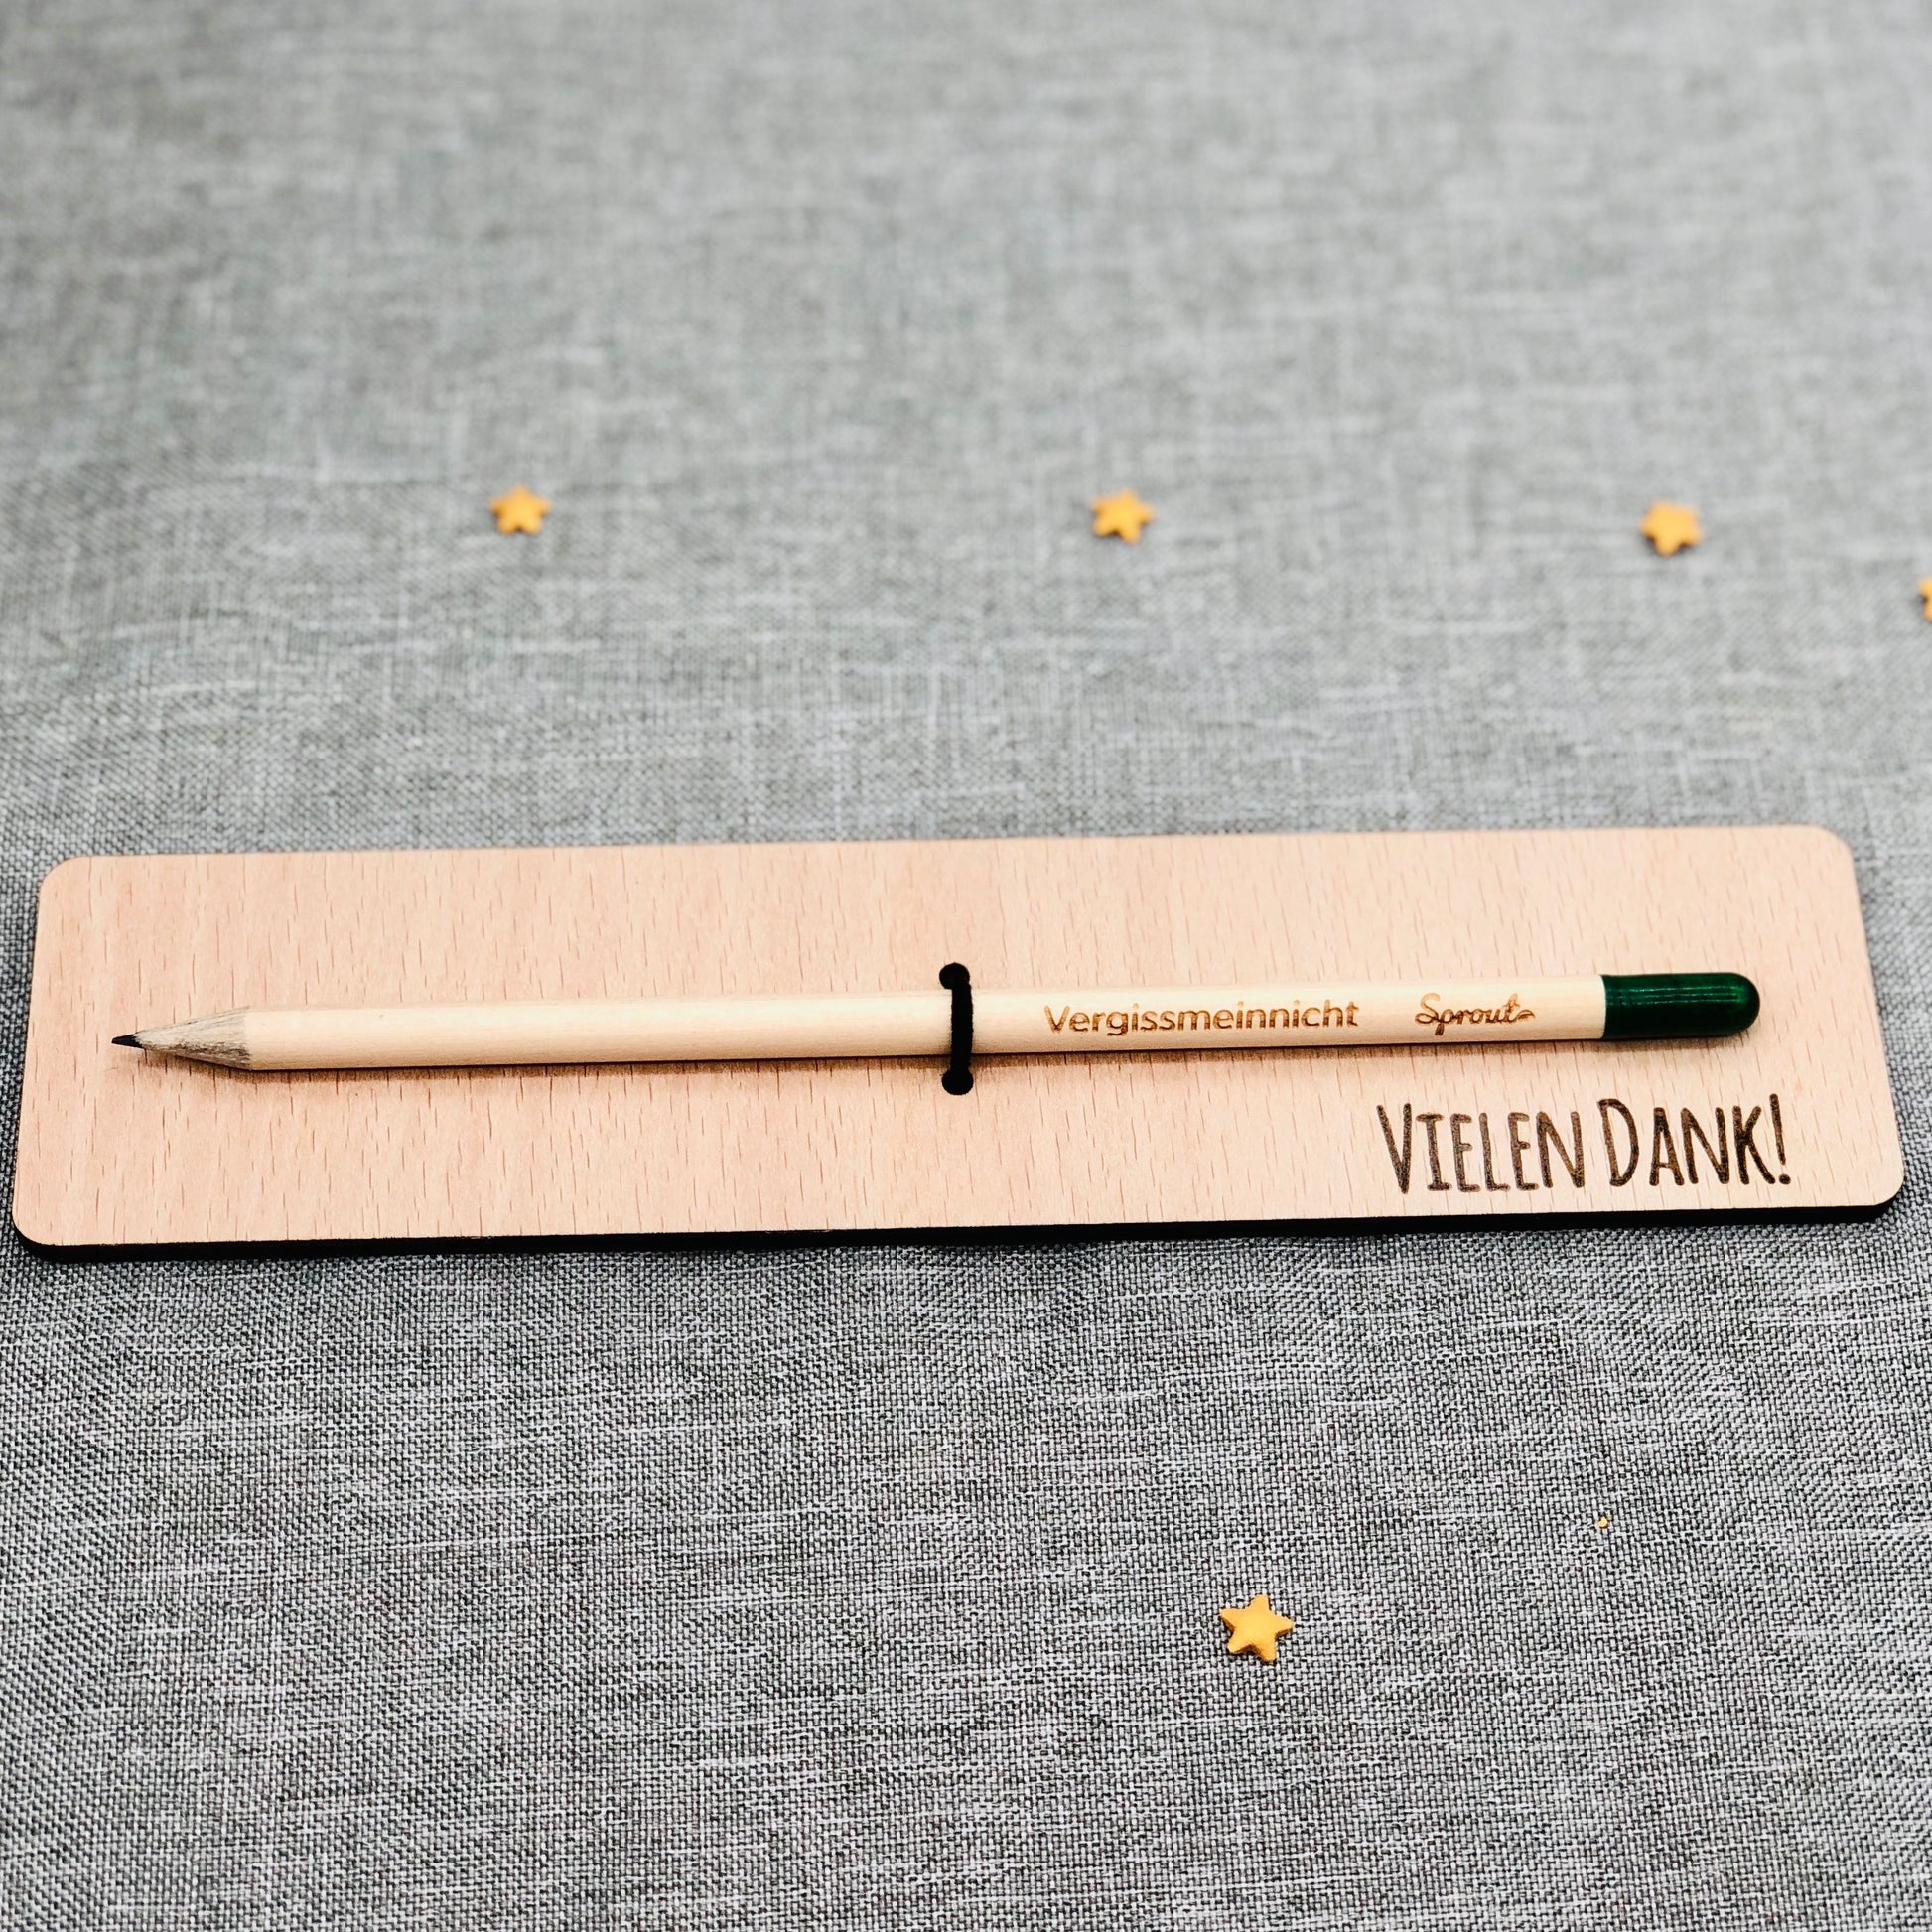 Holzkarte "Vielen Danke" mit Bleistift als nachhaltiges Geschenk